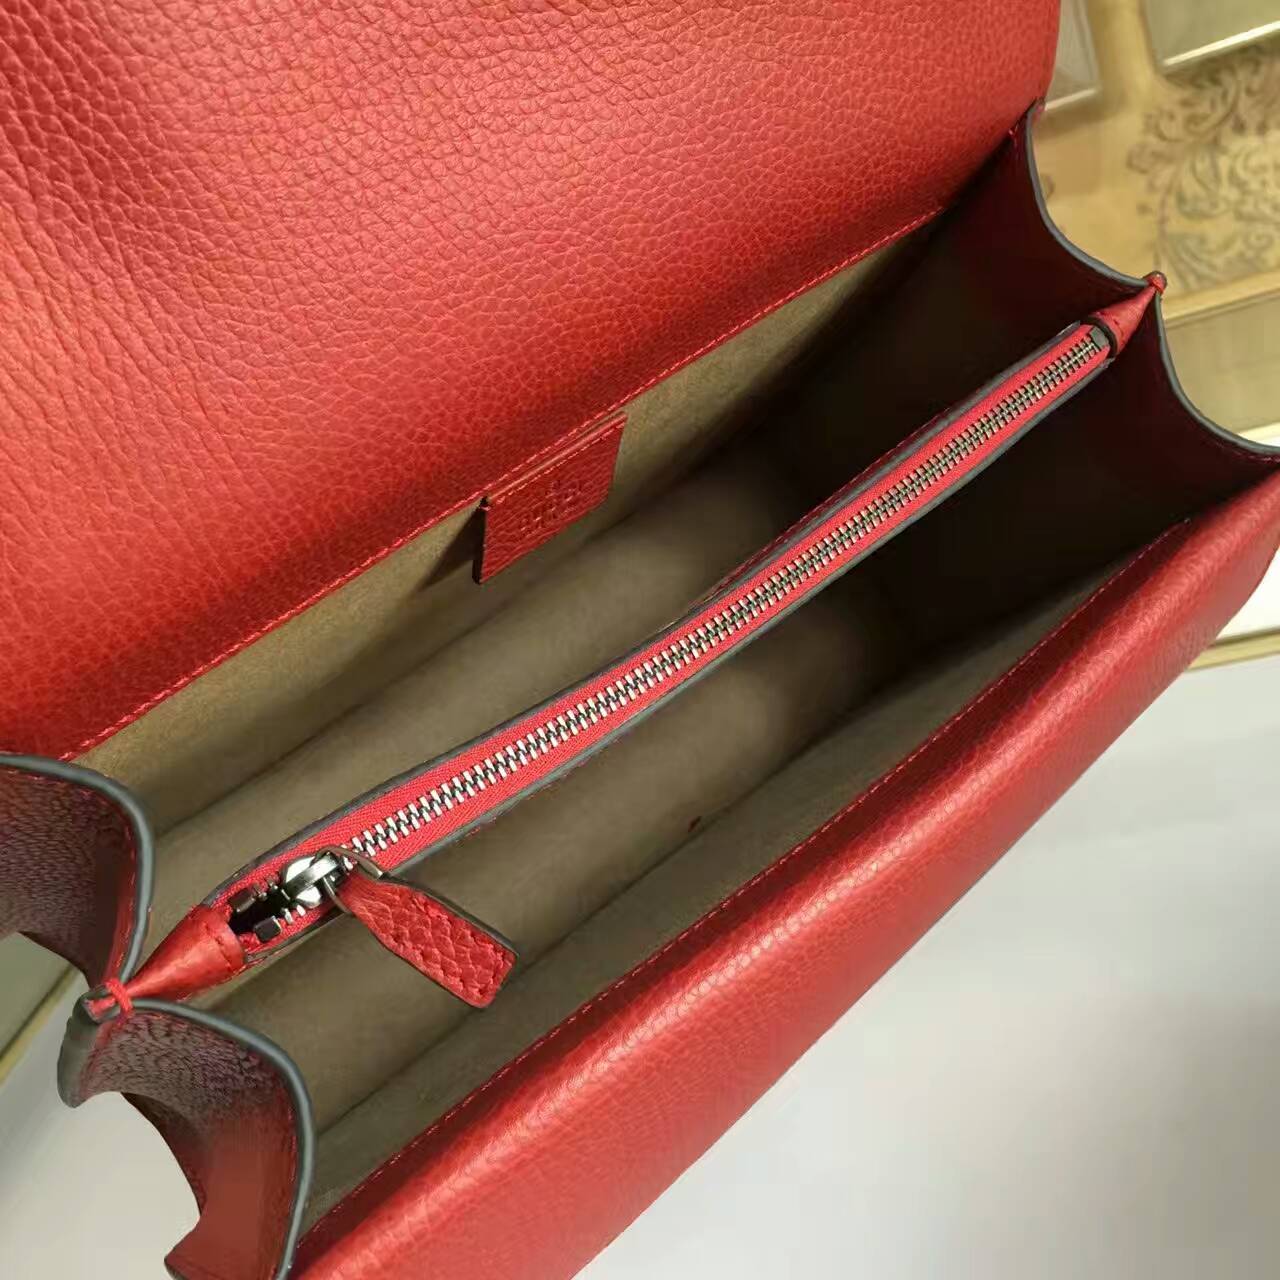 Gucci Dionysus Calfskin leather shoulder bag-400249